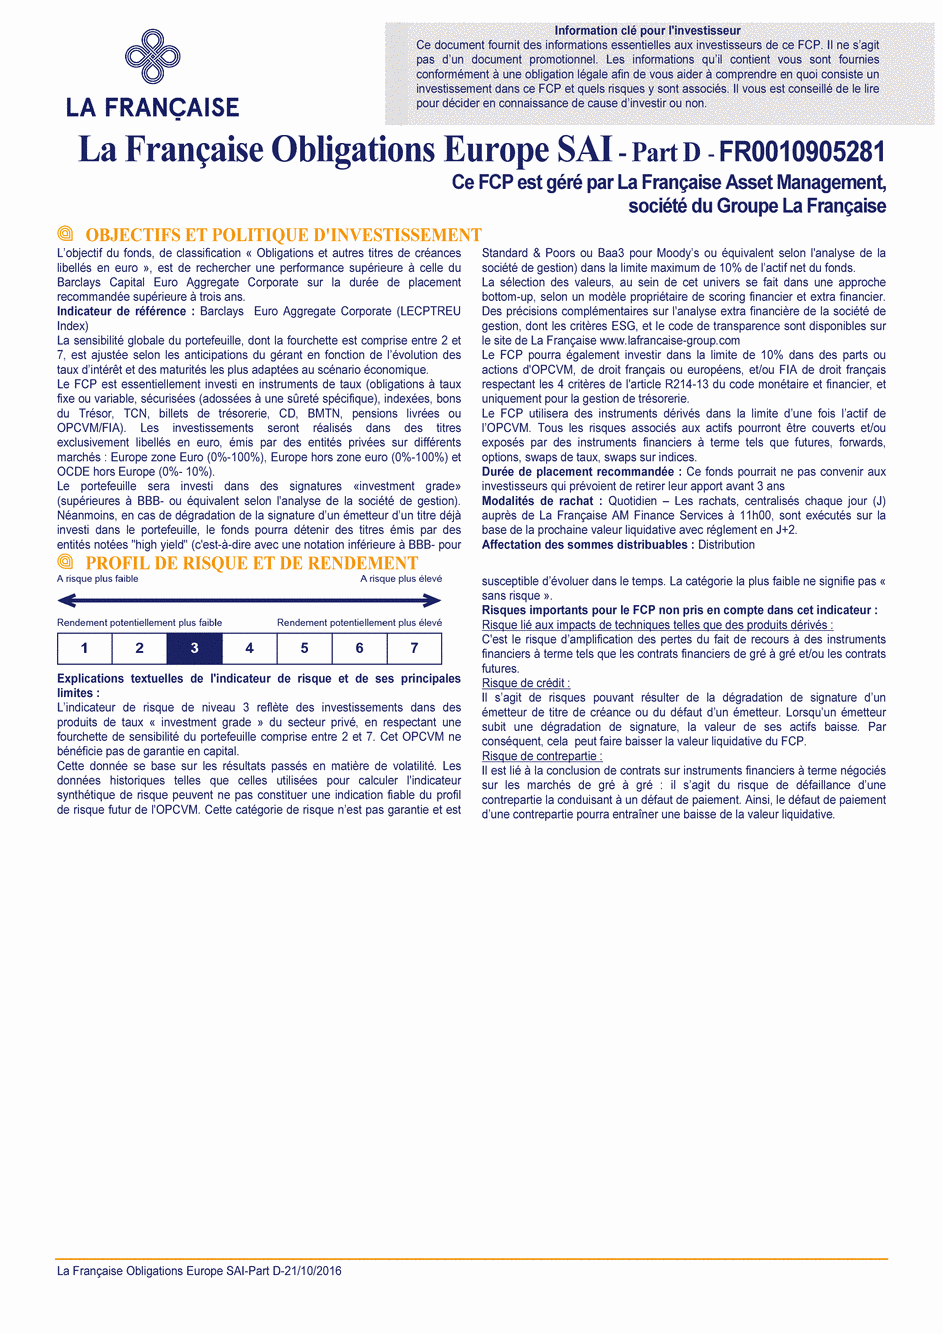 DICI La Française Obligations Europe SAI - Part D - 21/10/2016 - Français